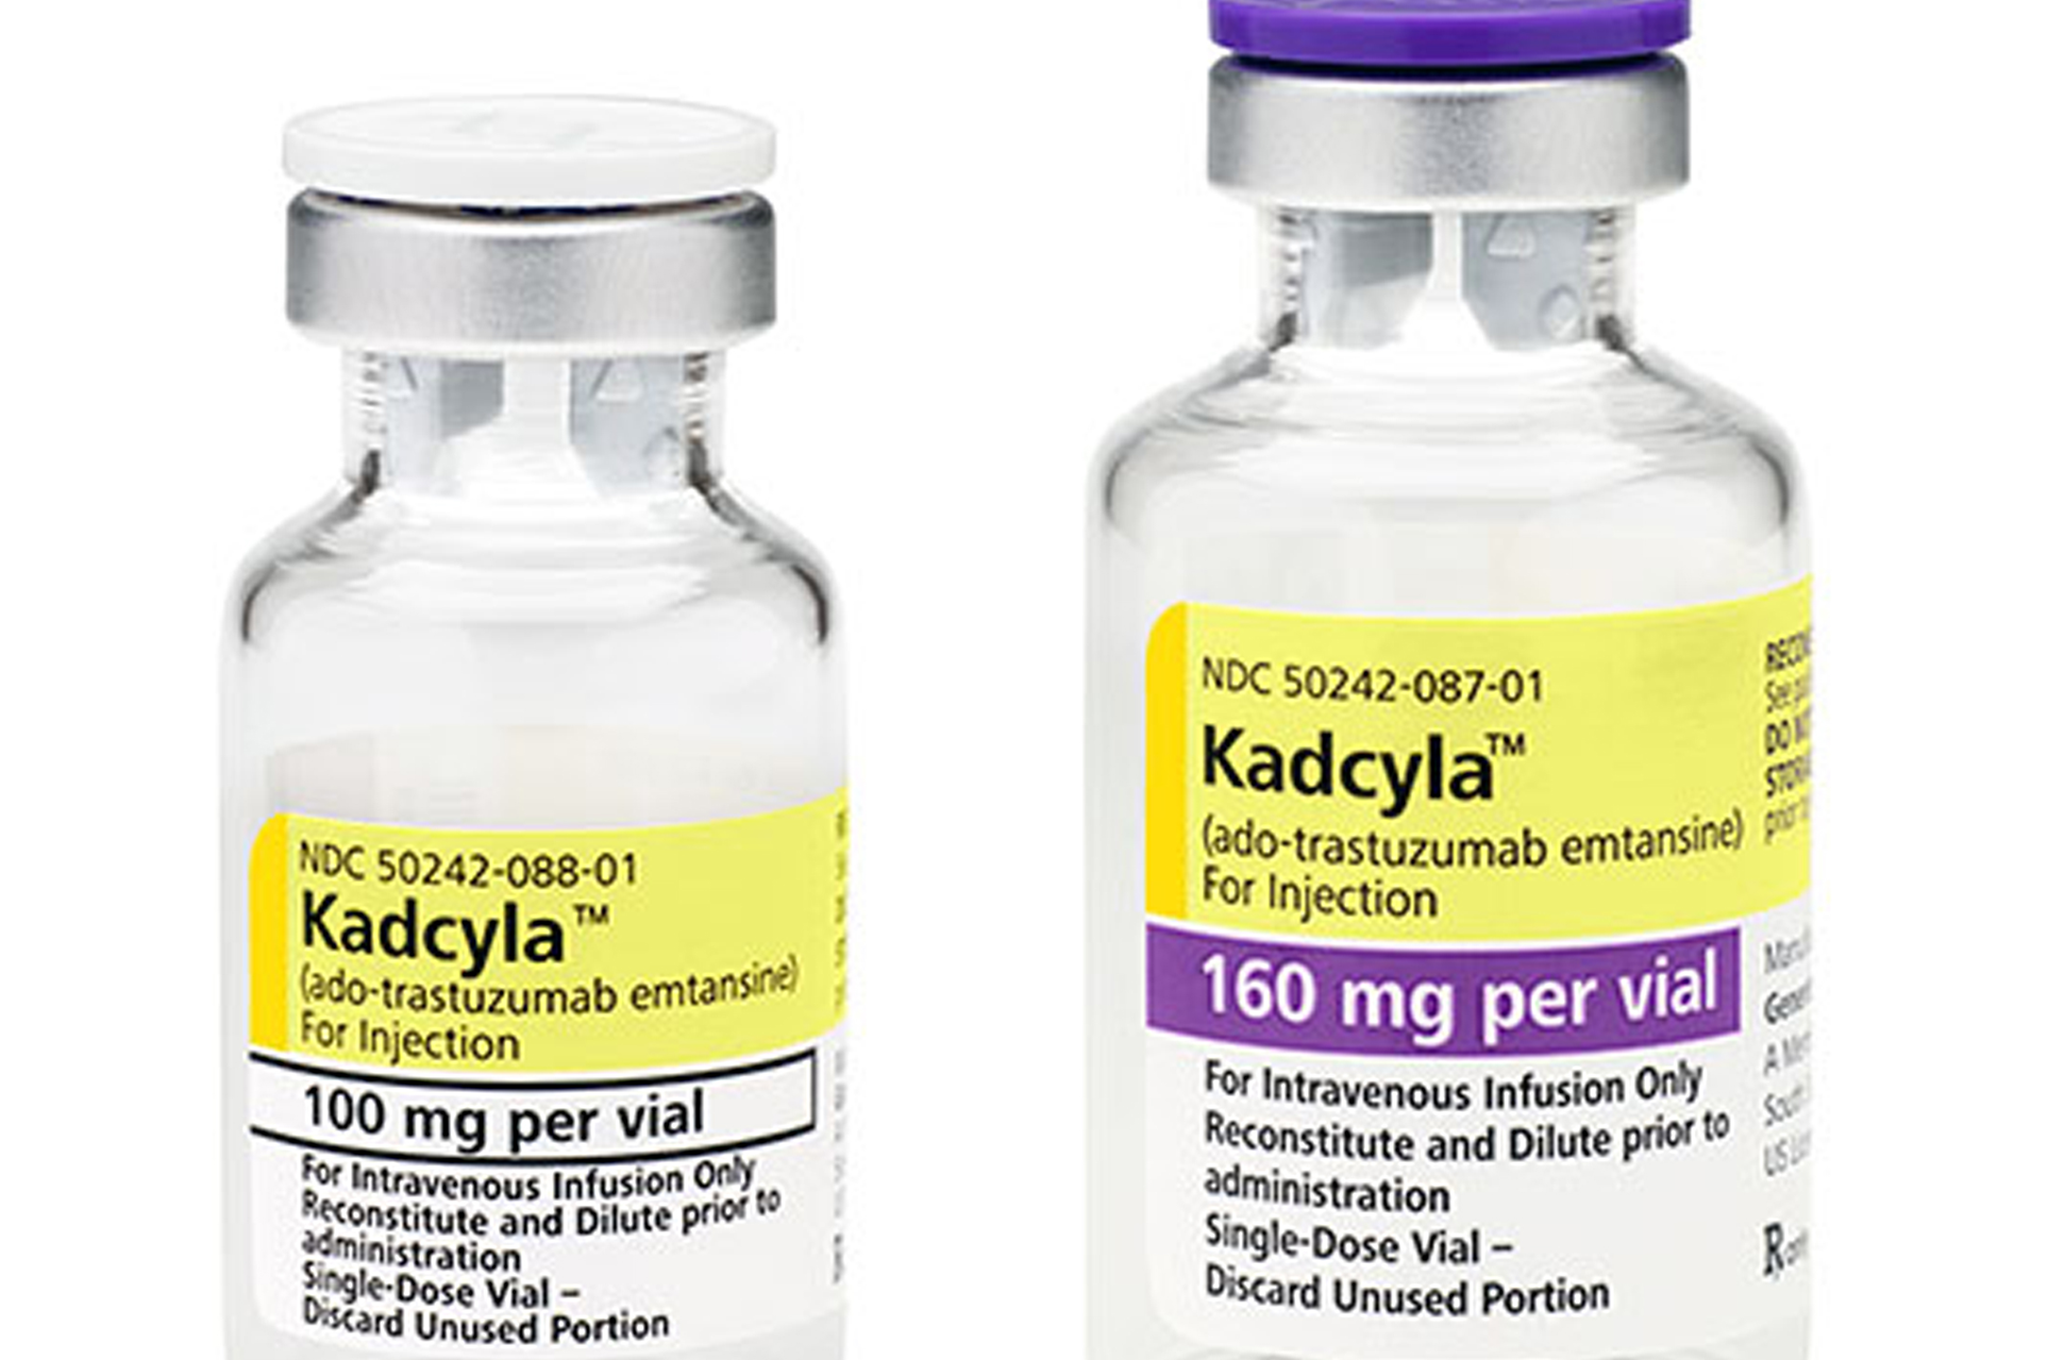 Kadcyla costs £90,000 per patient